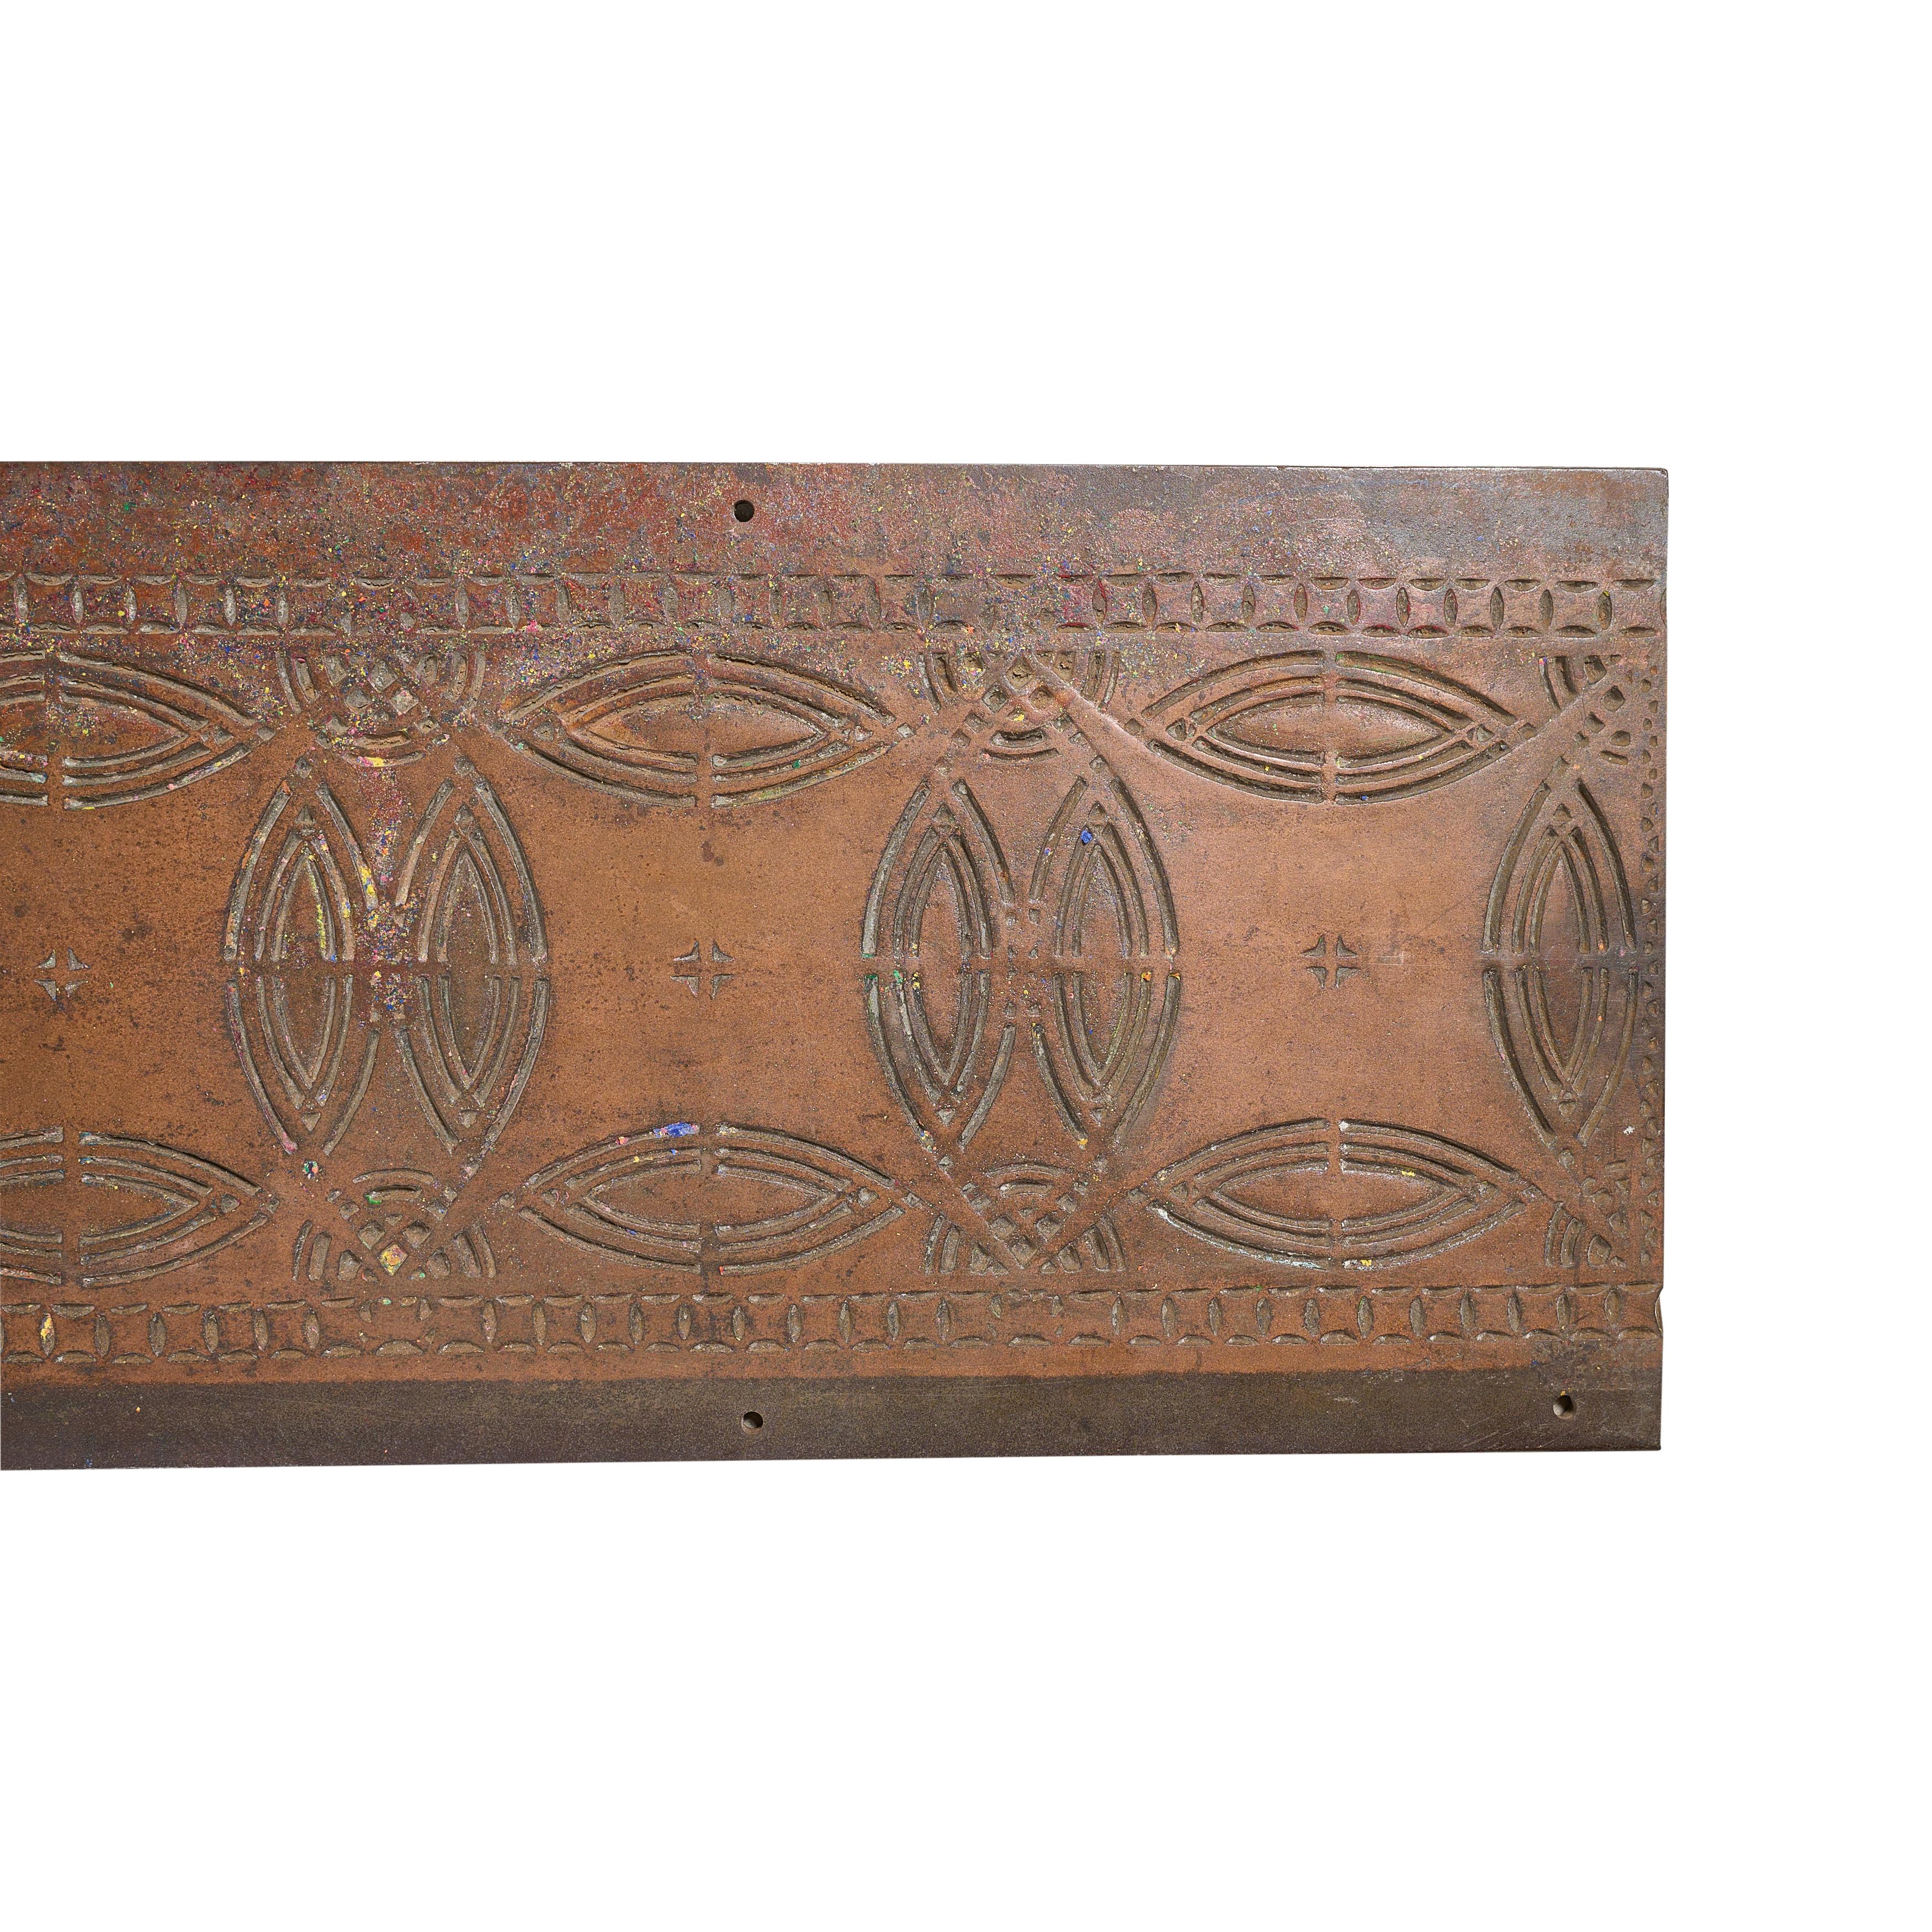 Fragment einer Säule aus Kupfer über Gusseisen von den Aufzugspfeilern der Chicago Stock Exchange. Louis Sullivan, Architekt.

